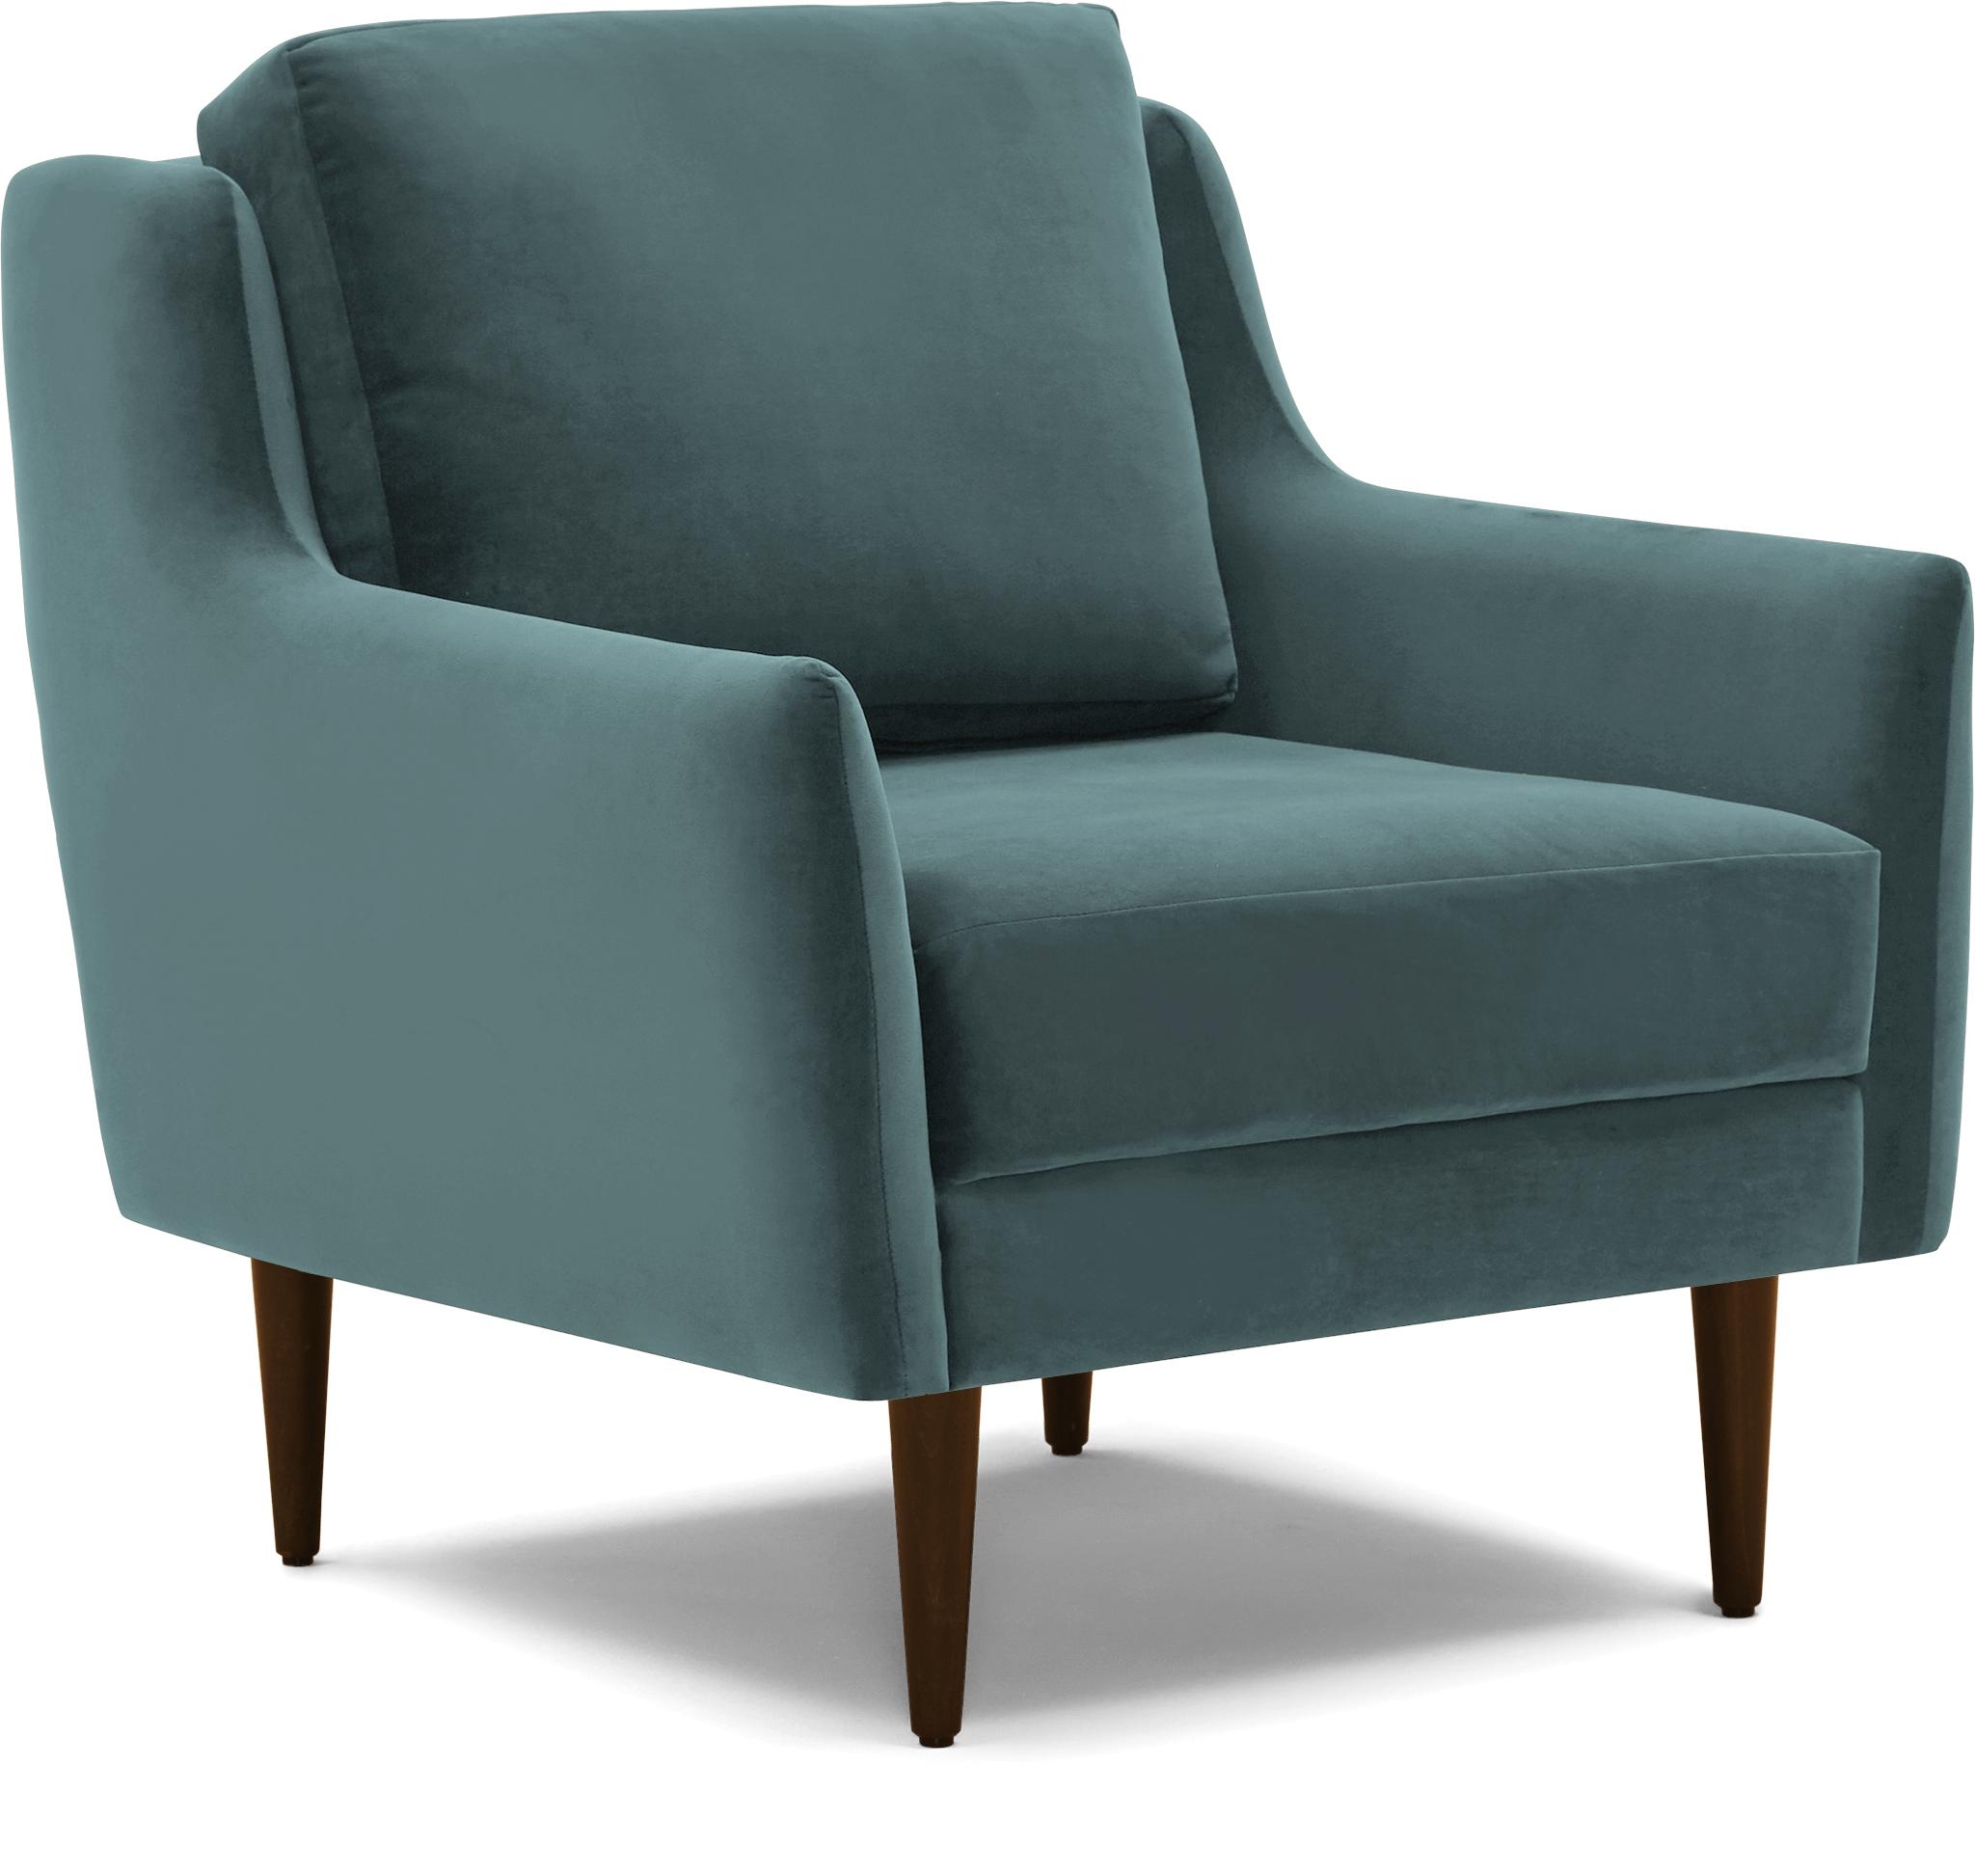 Blue Bell Mid Century Modern Chair - Dawson Slate - Mocha - Image 1